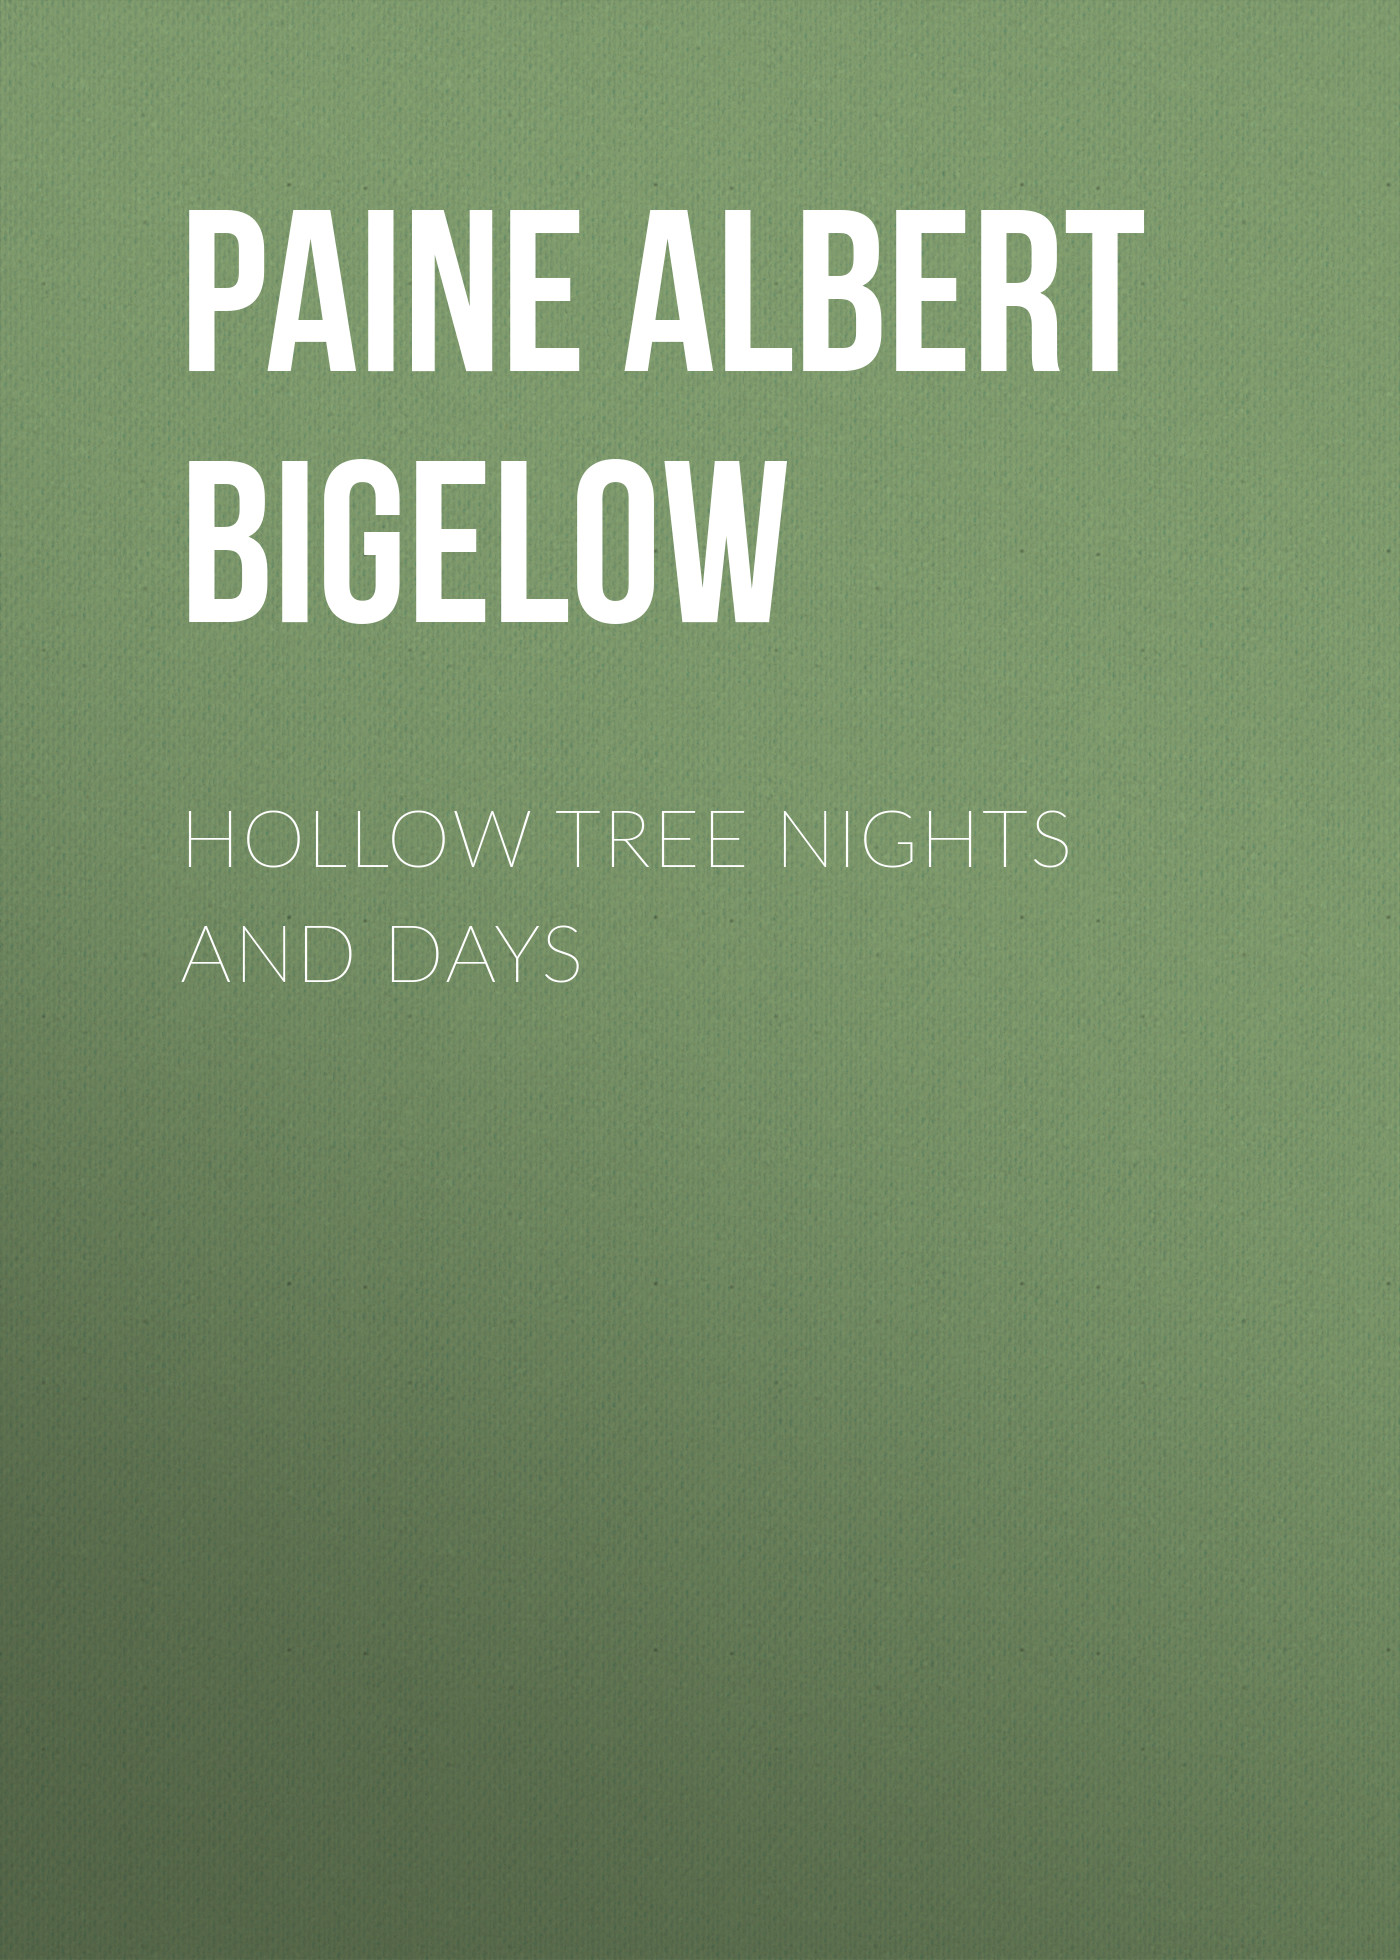 Книга Hollow Tree Nights and Days из серии , созданная Albert Paine, может относится к жанру Зарубежные детские книги, Зарубежная старинная литература, Зарубежная классика. Стоимость электронной книги Hollow Tree Nights and Days с идентификатором 34839750 составляет 0 руб.